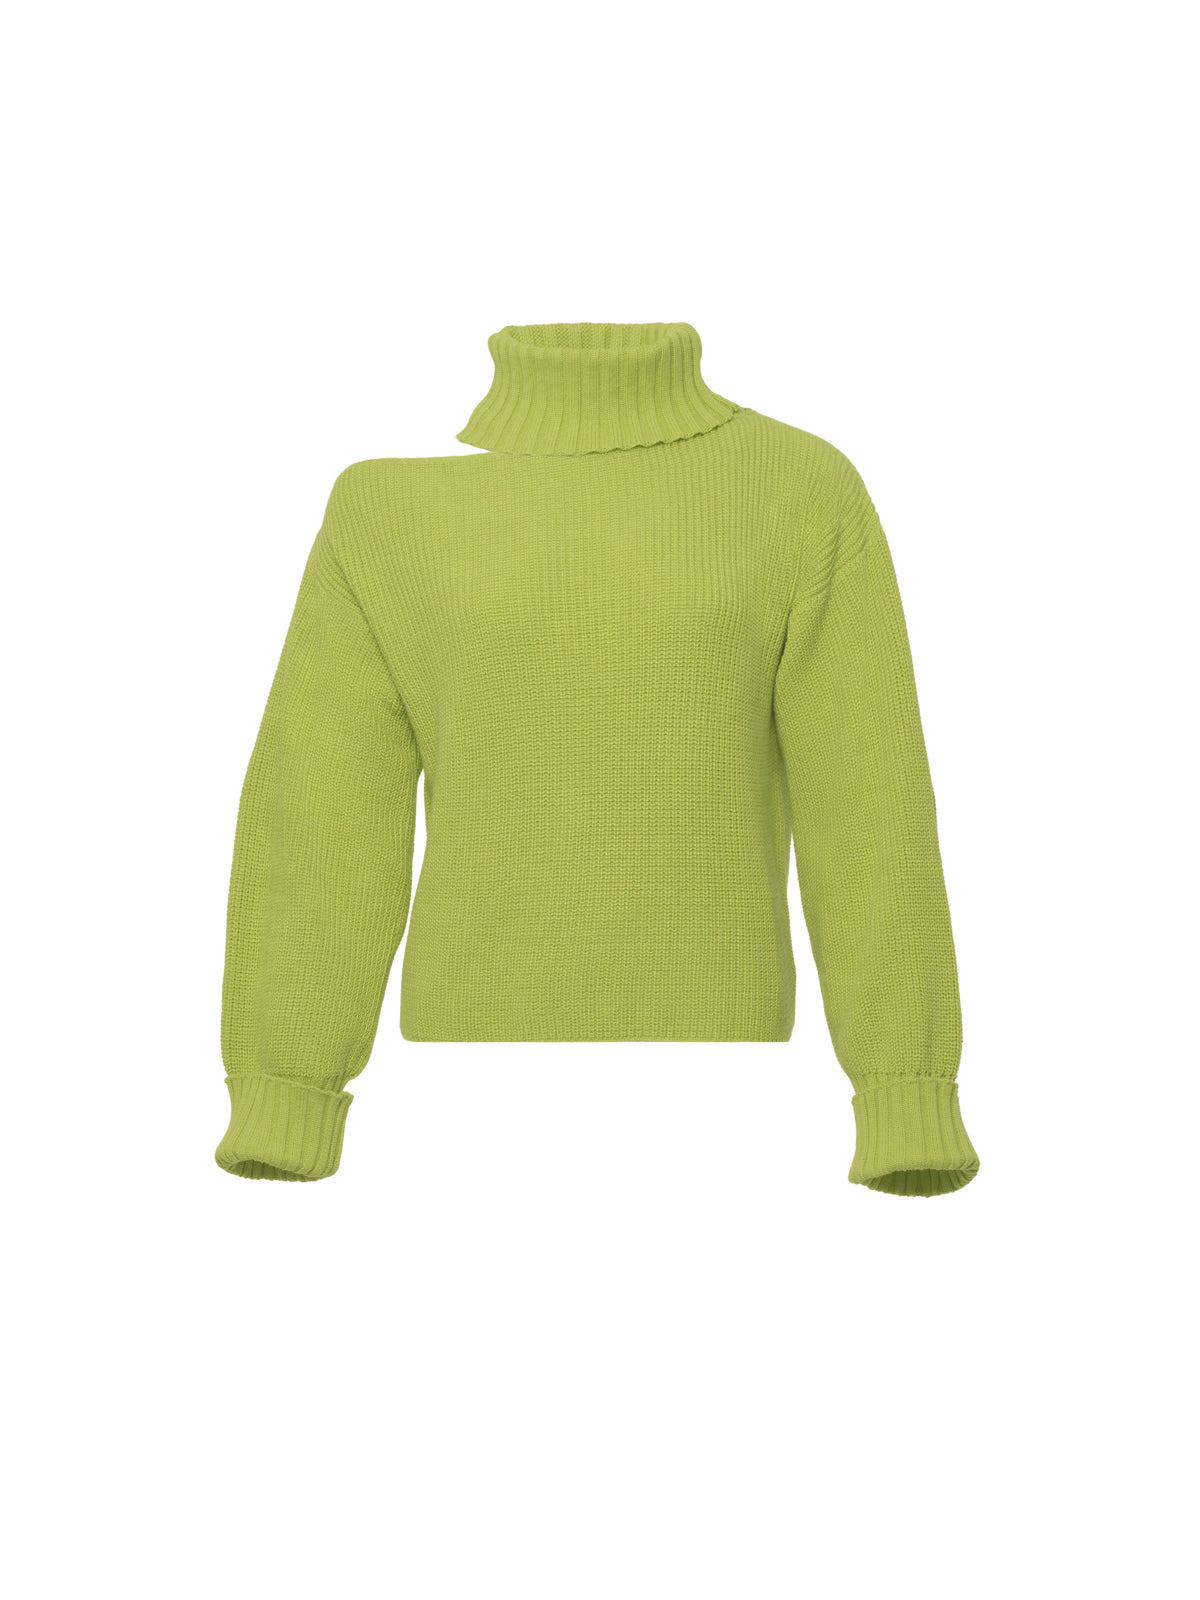 VALI sweater - pistachio